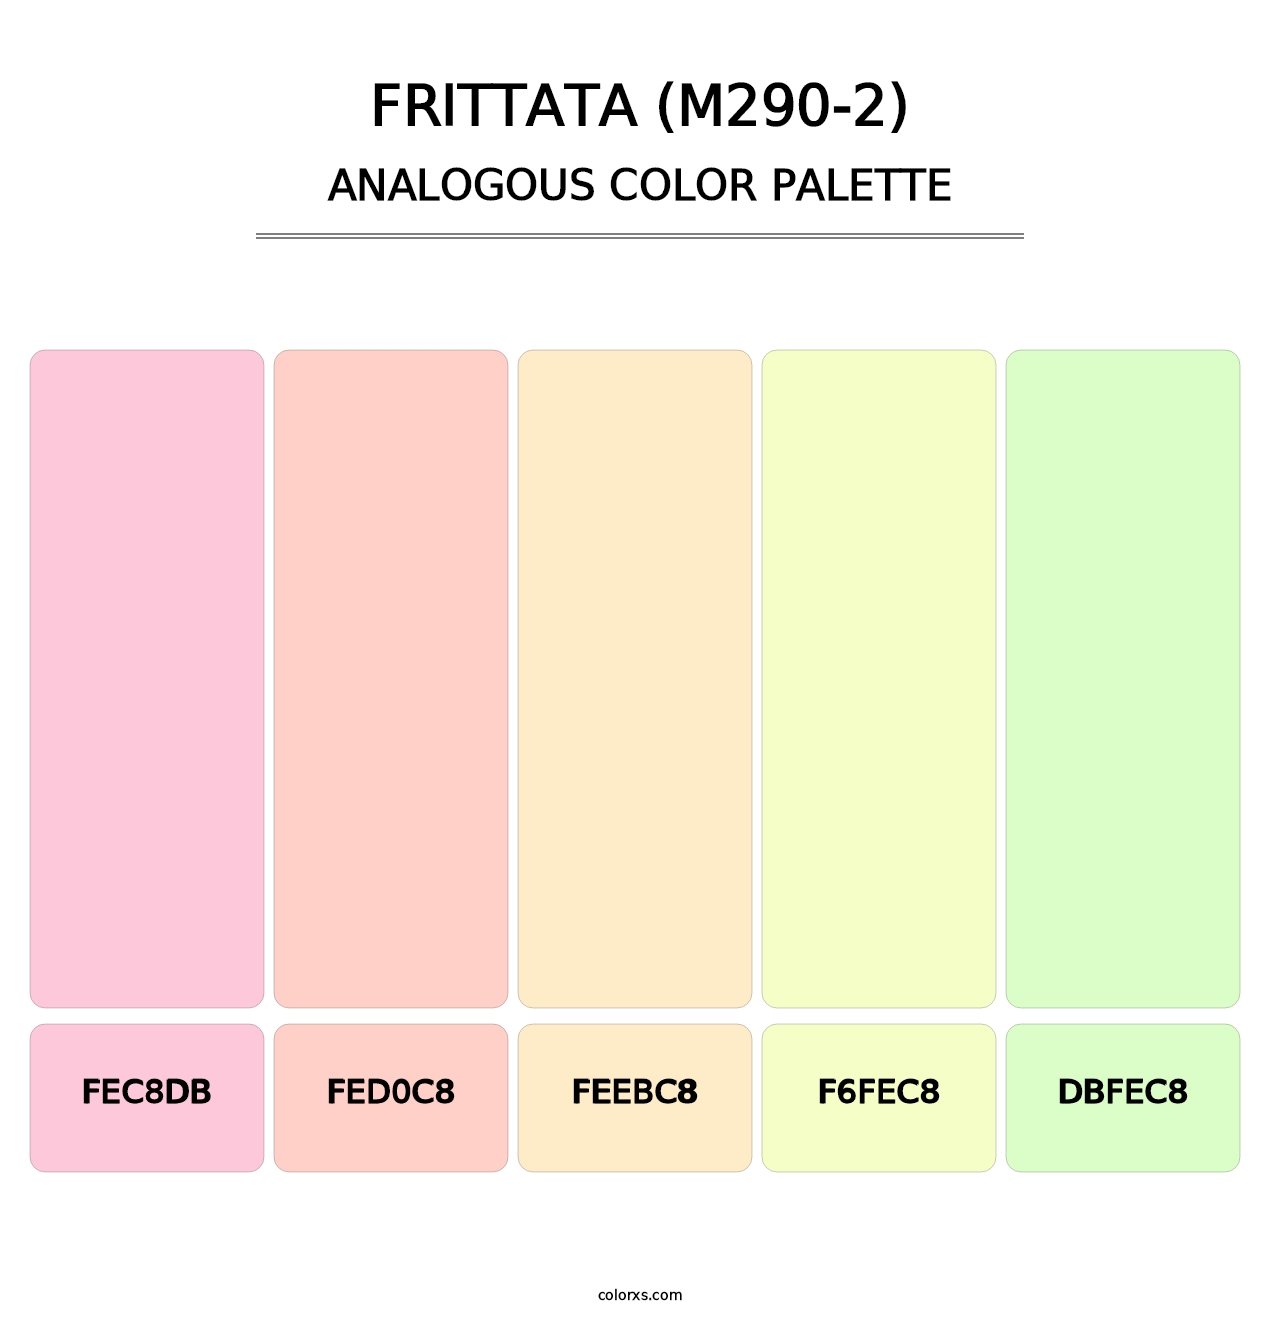 Frittata (M290-2) - Analogous Color Palette